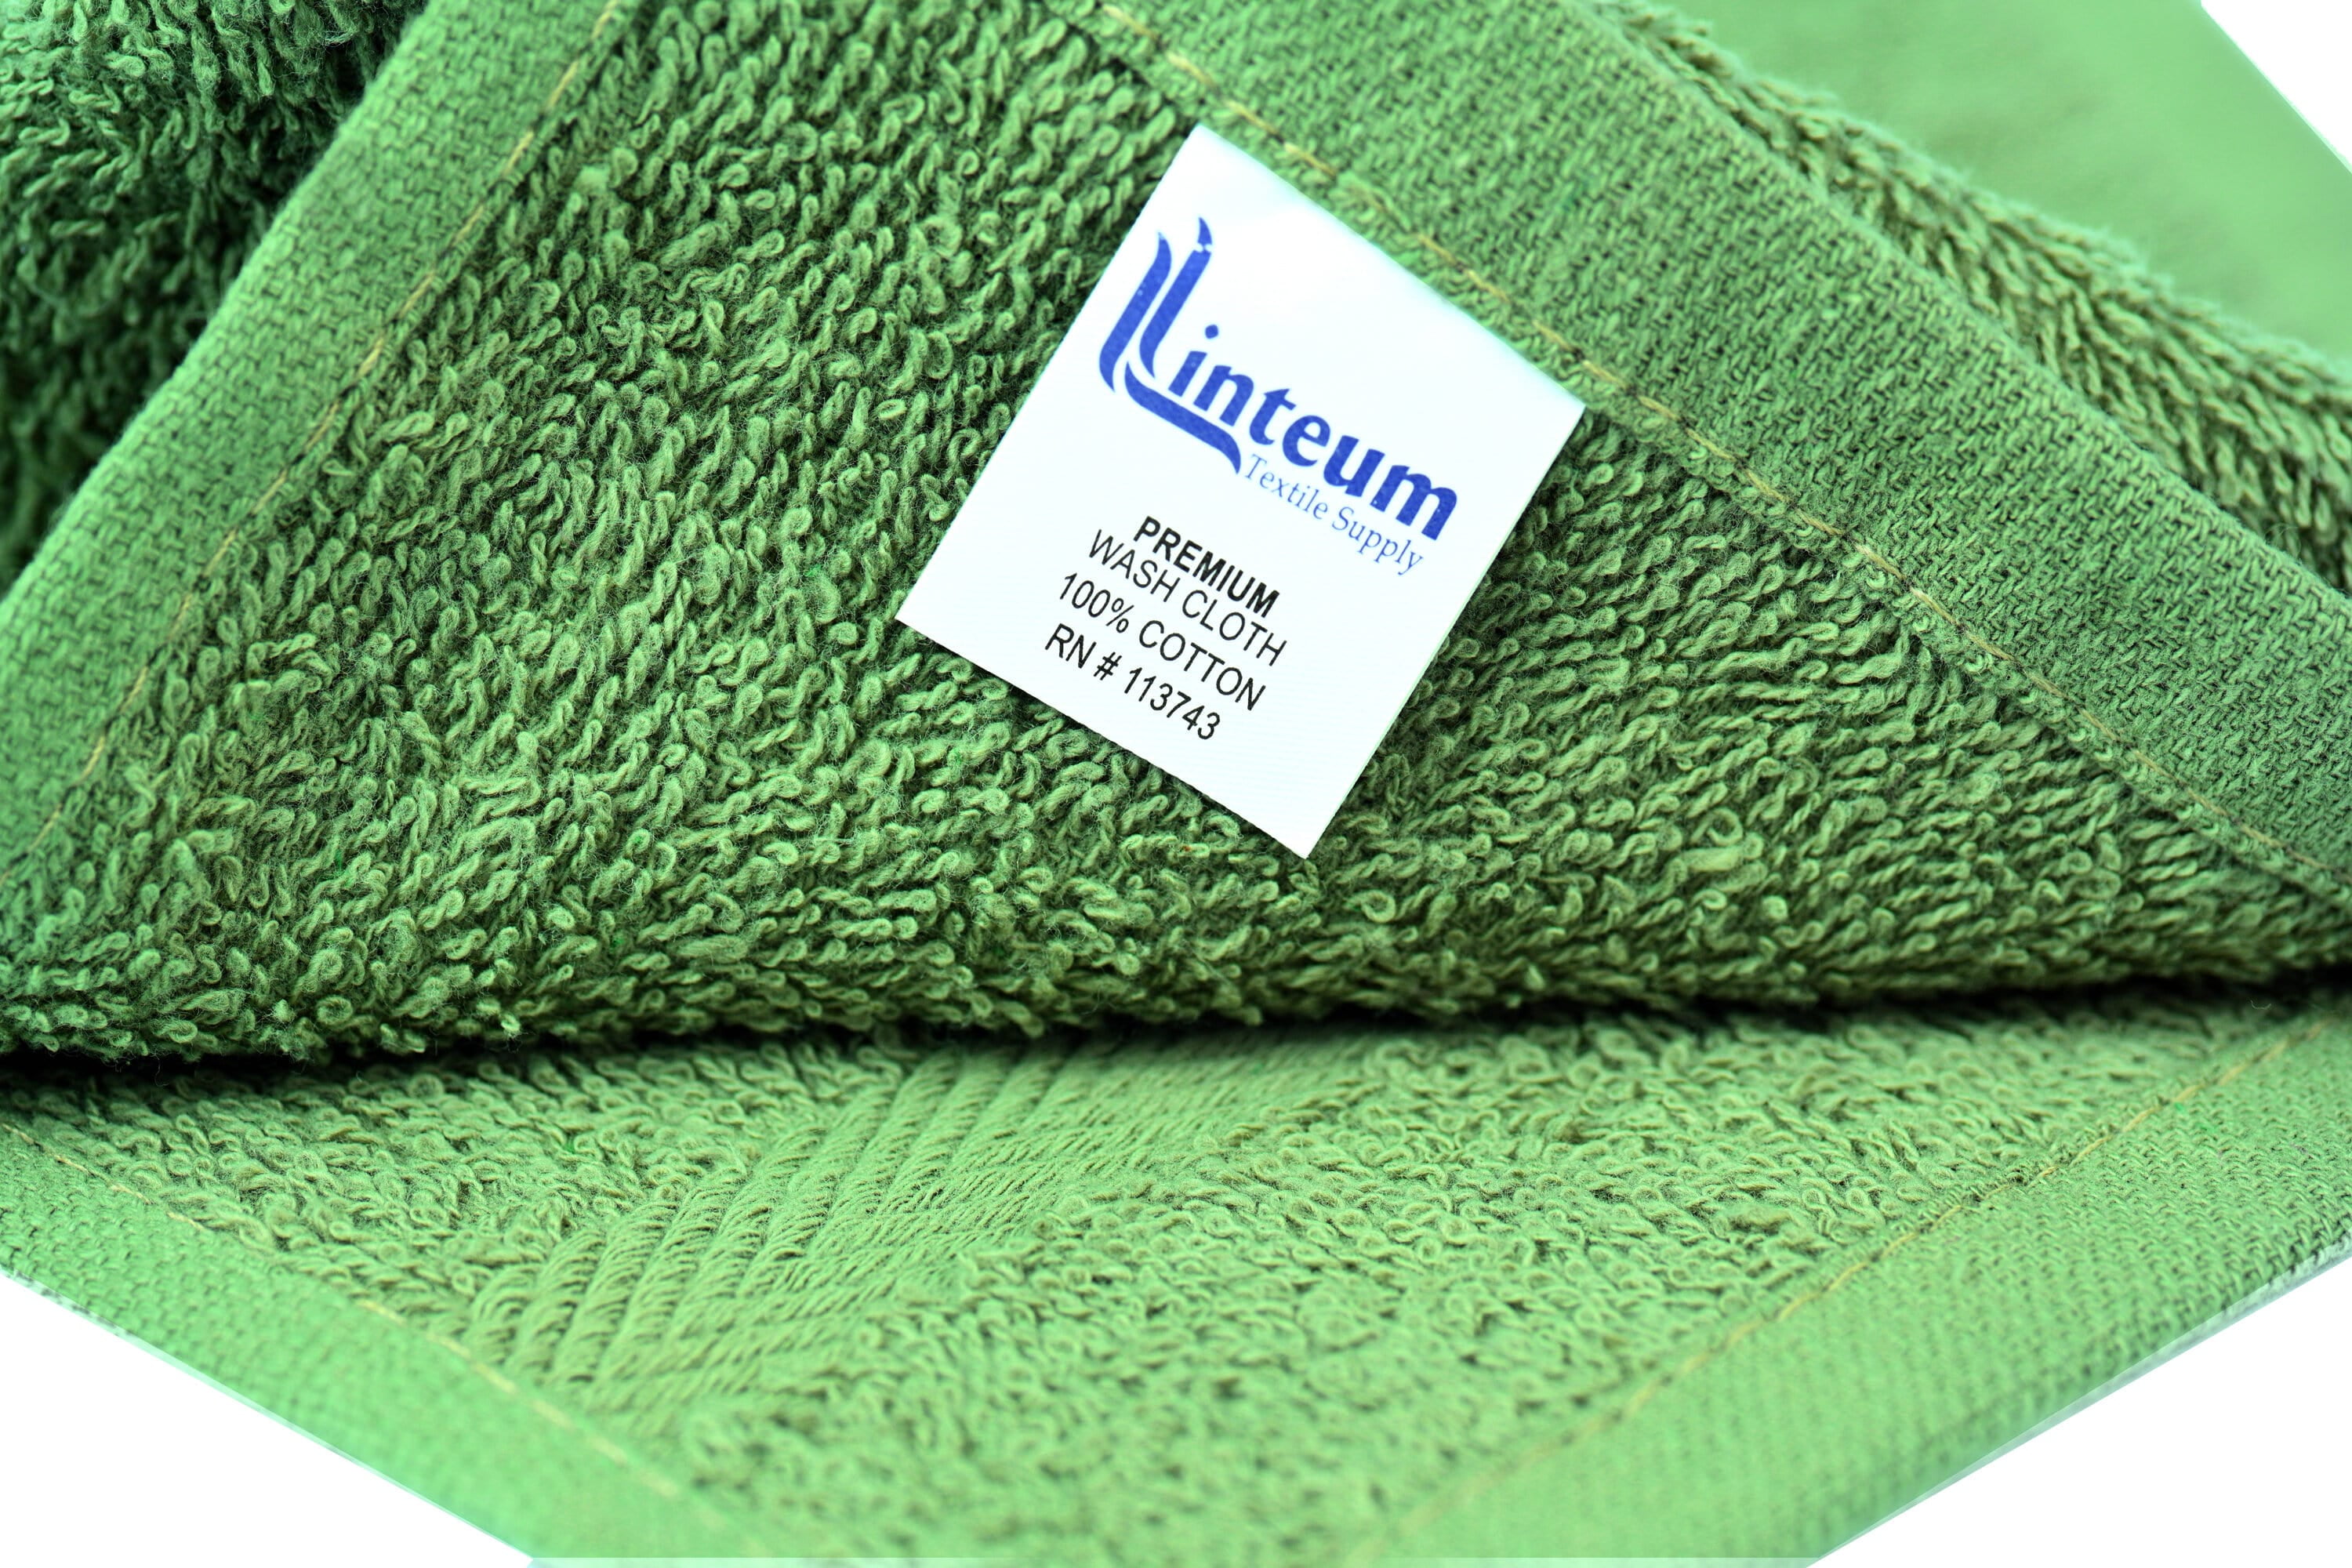 Linteum Textile (1-Piece, 34x36 in, Tan) Washable Reusable